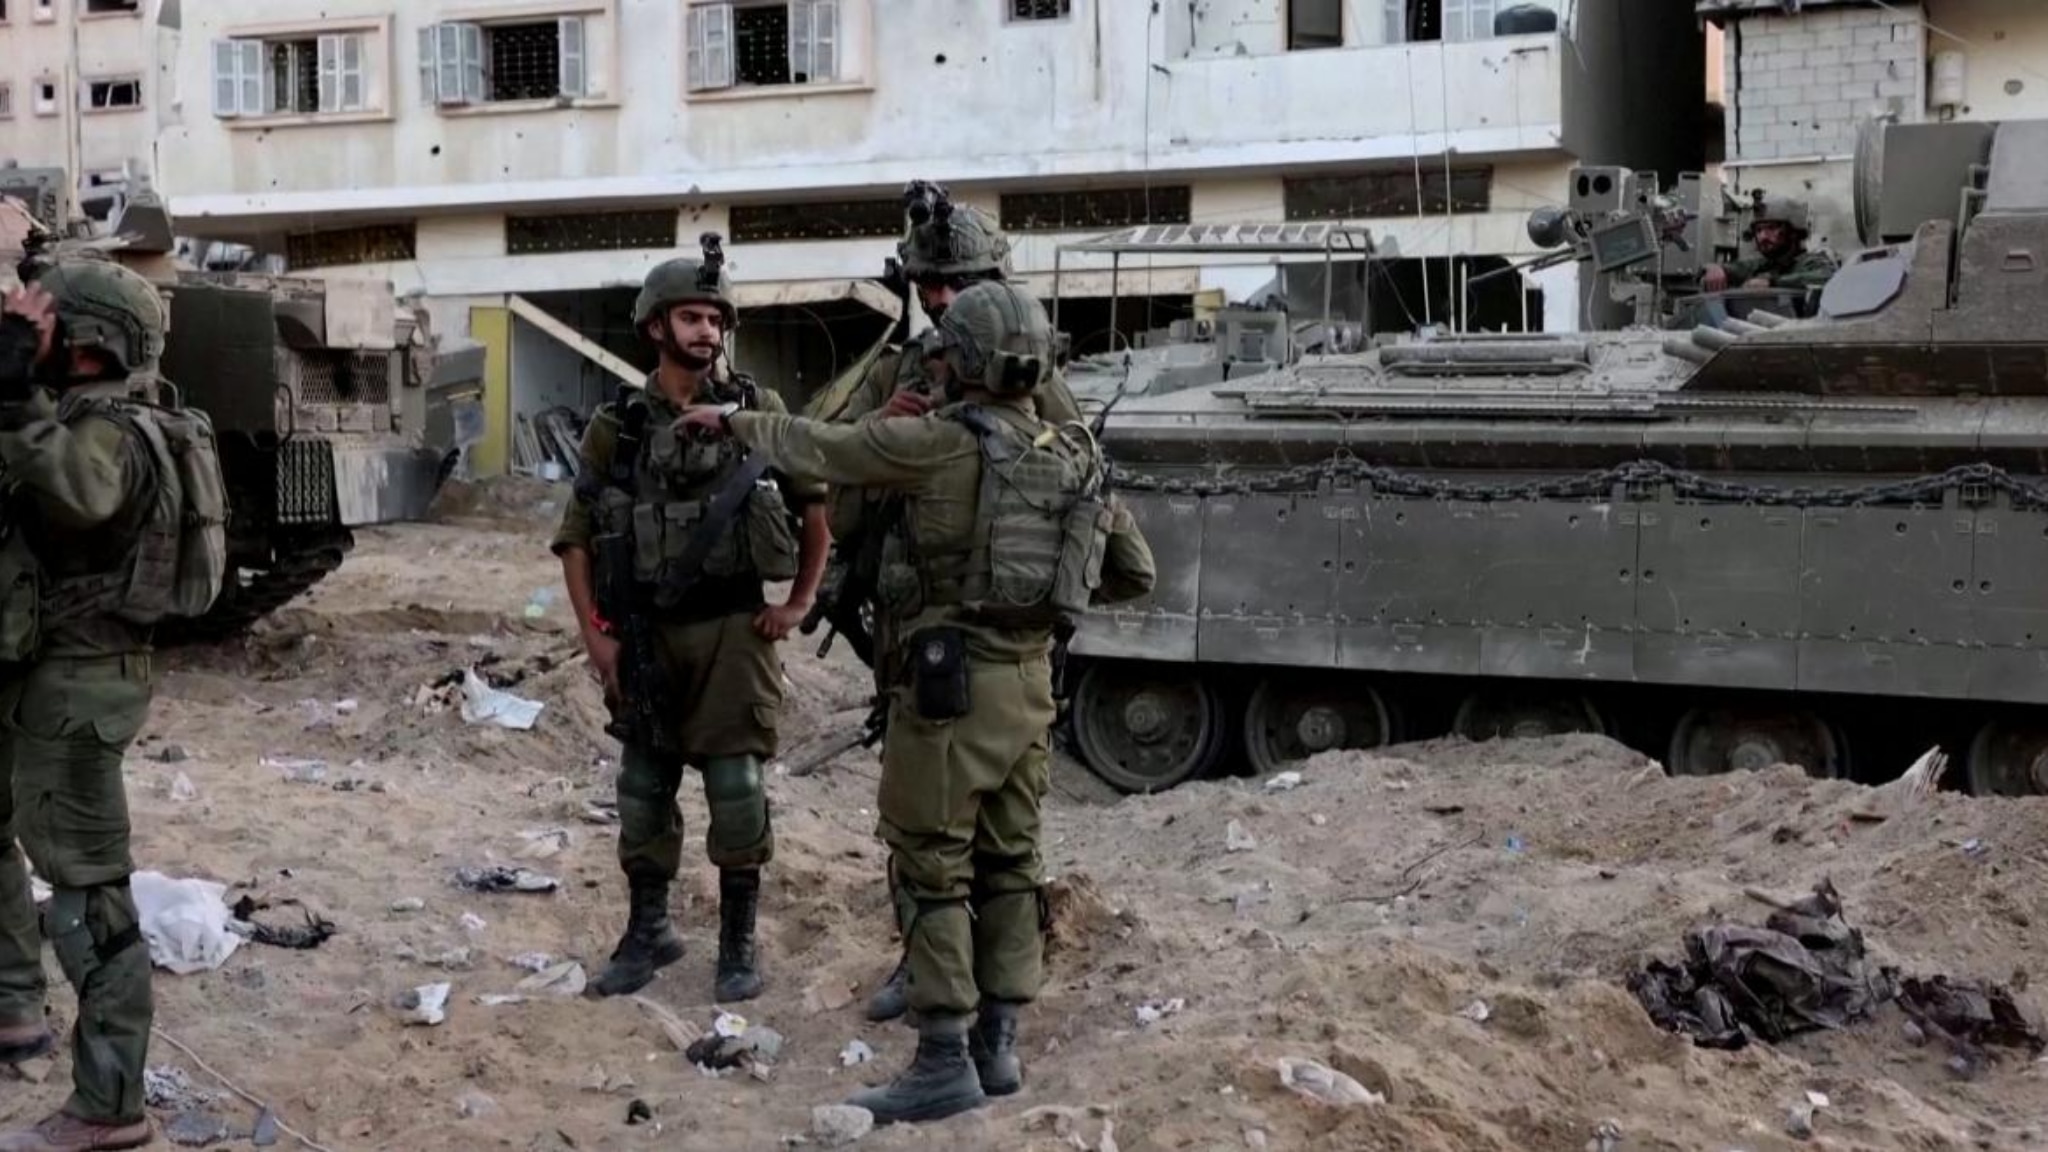 Le rovine di Gaza, i giornalisti al seguito delle truppe israeliane